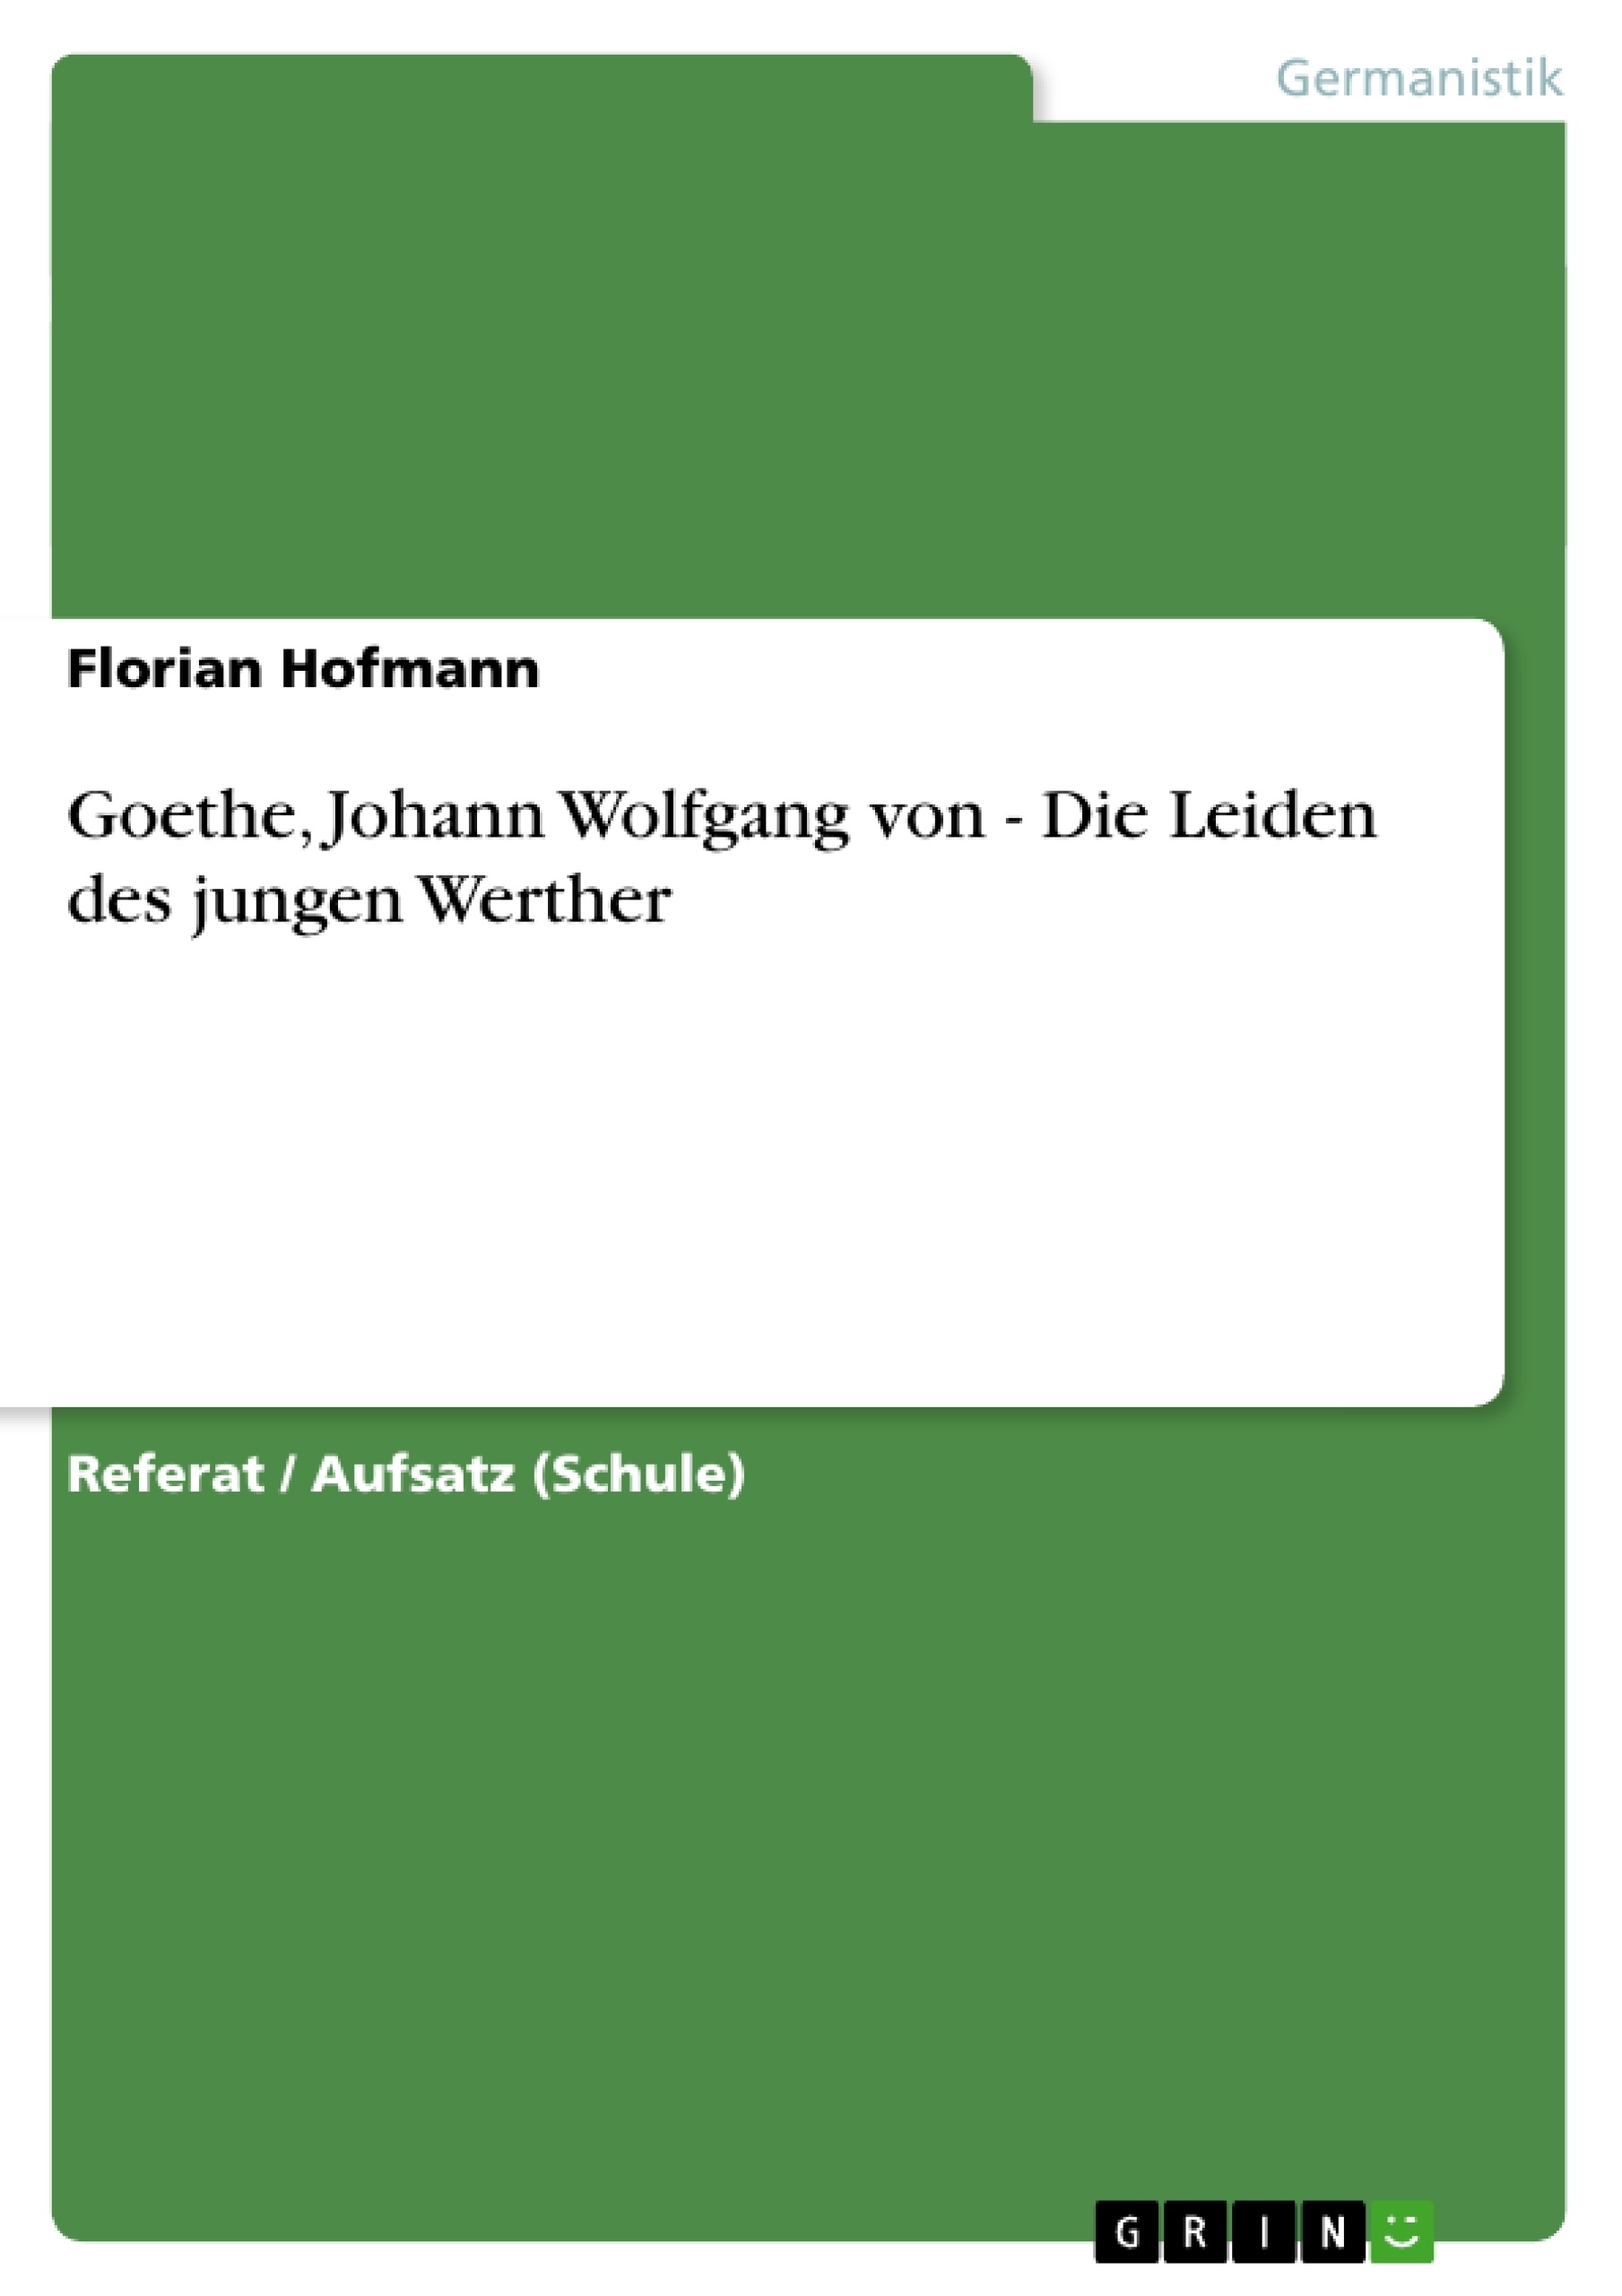 Title: Goethe, Johann Wolfgang von - Die Leiden des jungen Werther